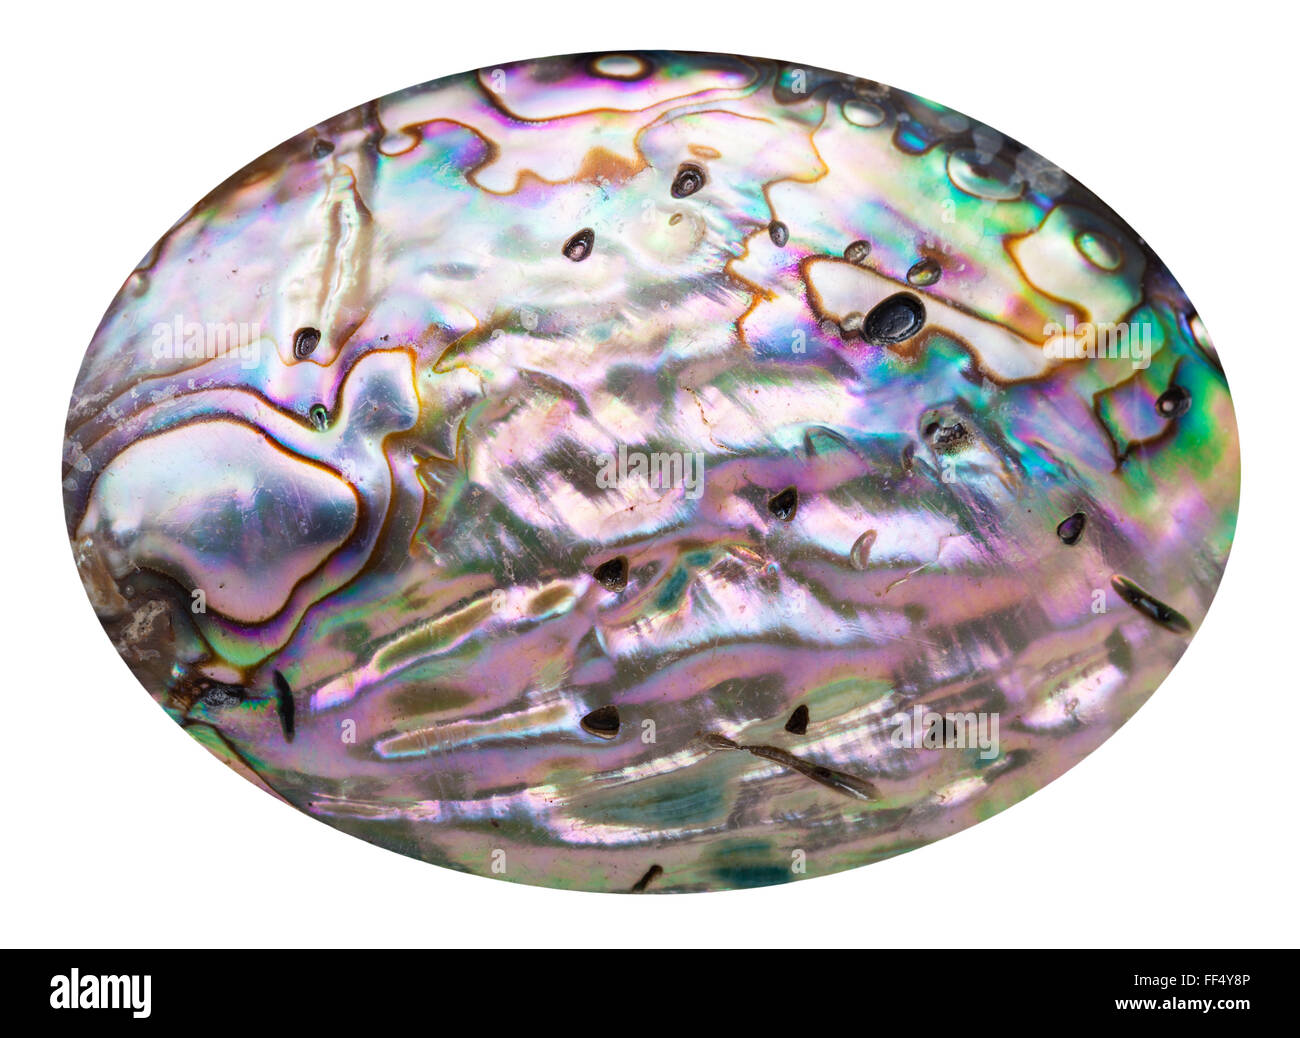 La surface polie de nacre rose coquille mollusques isolé sur fond blanc Banque D'Images